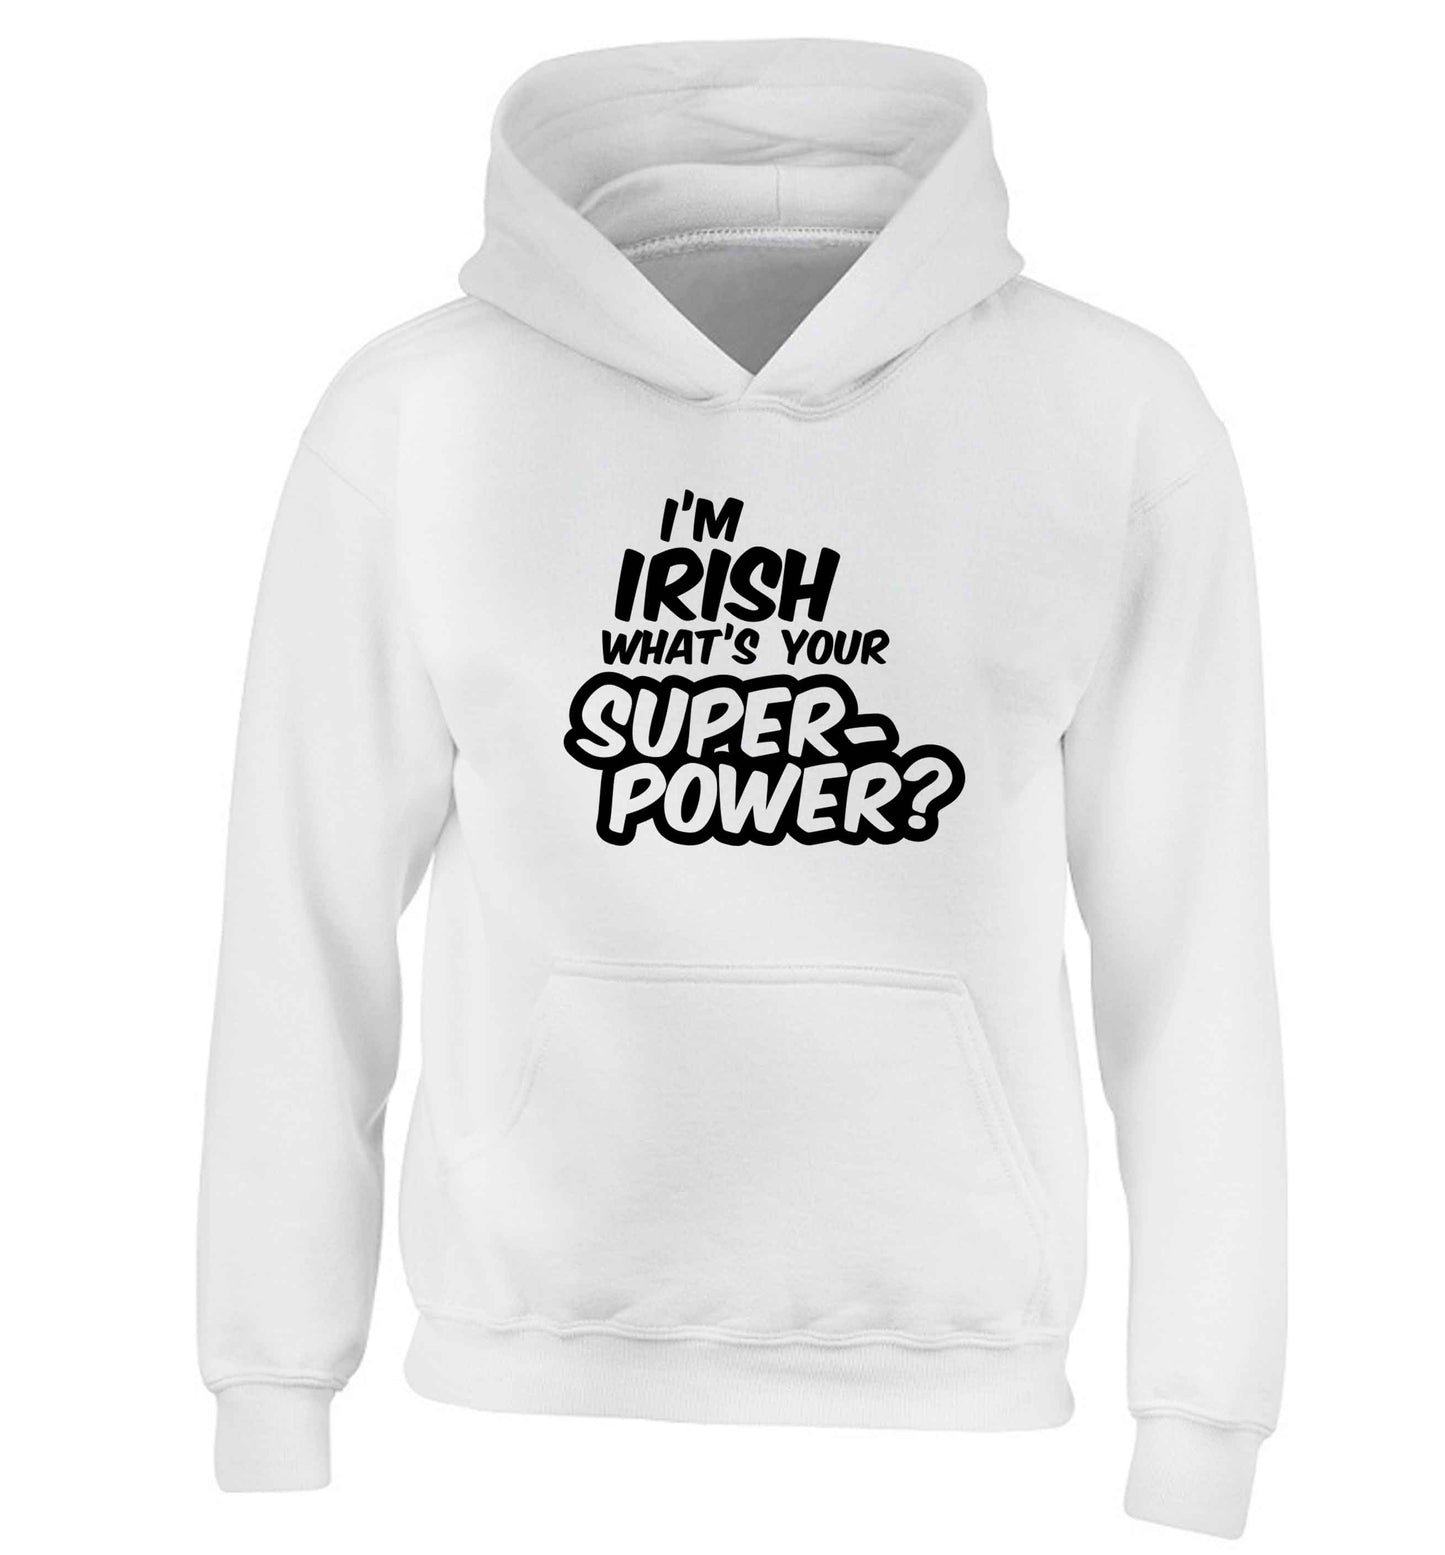 I'm Irish what's your superpower? children's white hoodie 12-13 Years